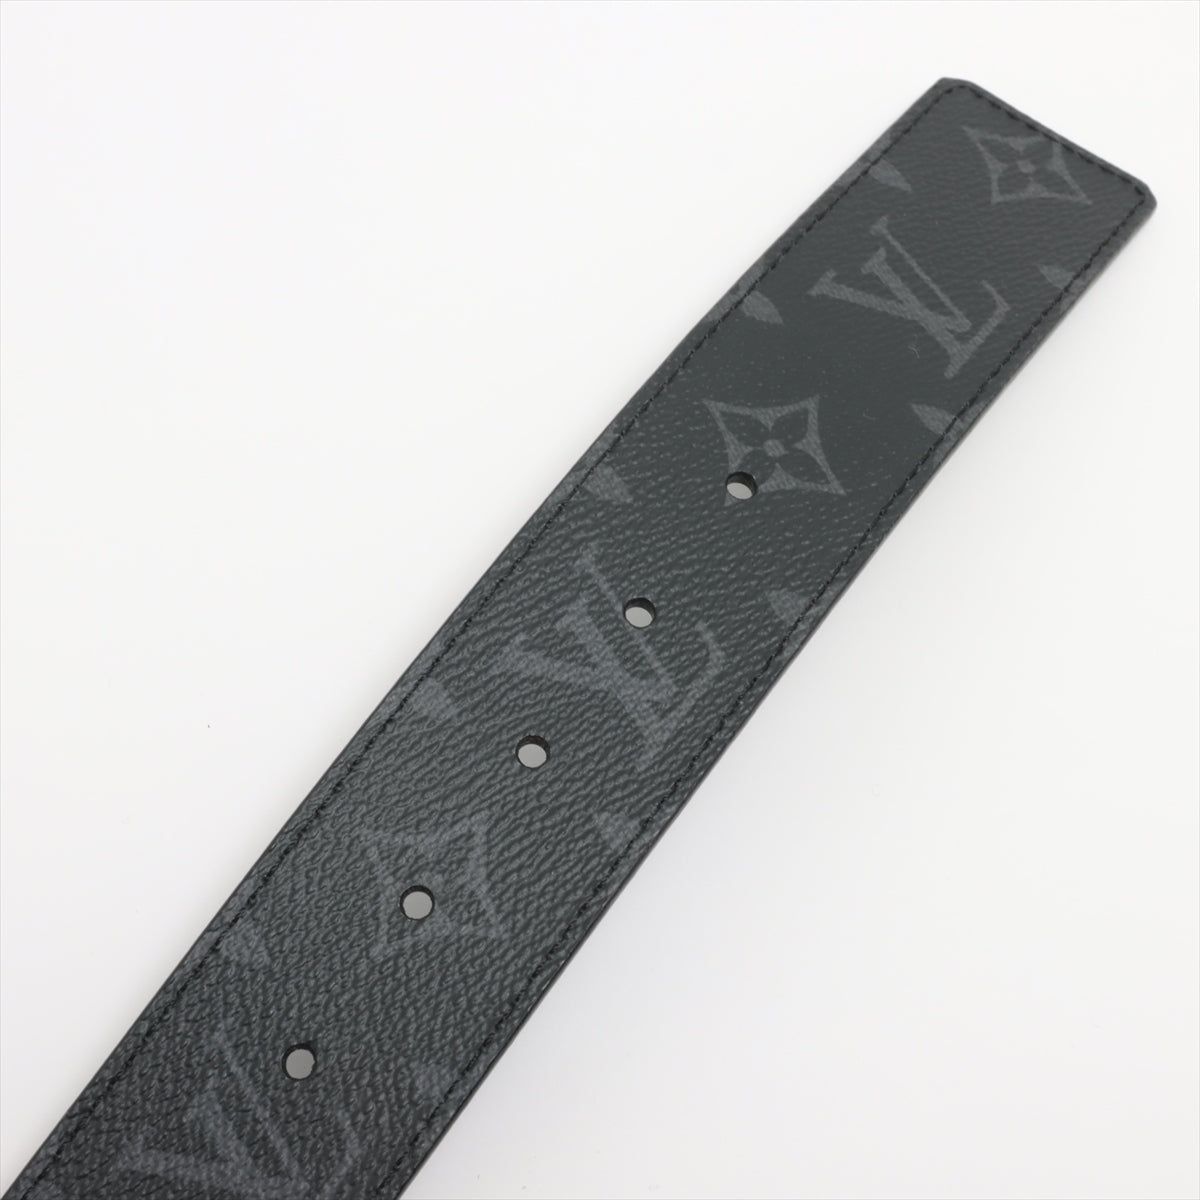 Louis Vuitton M9043 San Tulle LV Initial AC1127 Belt 95/36 Leather Black